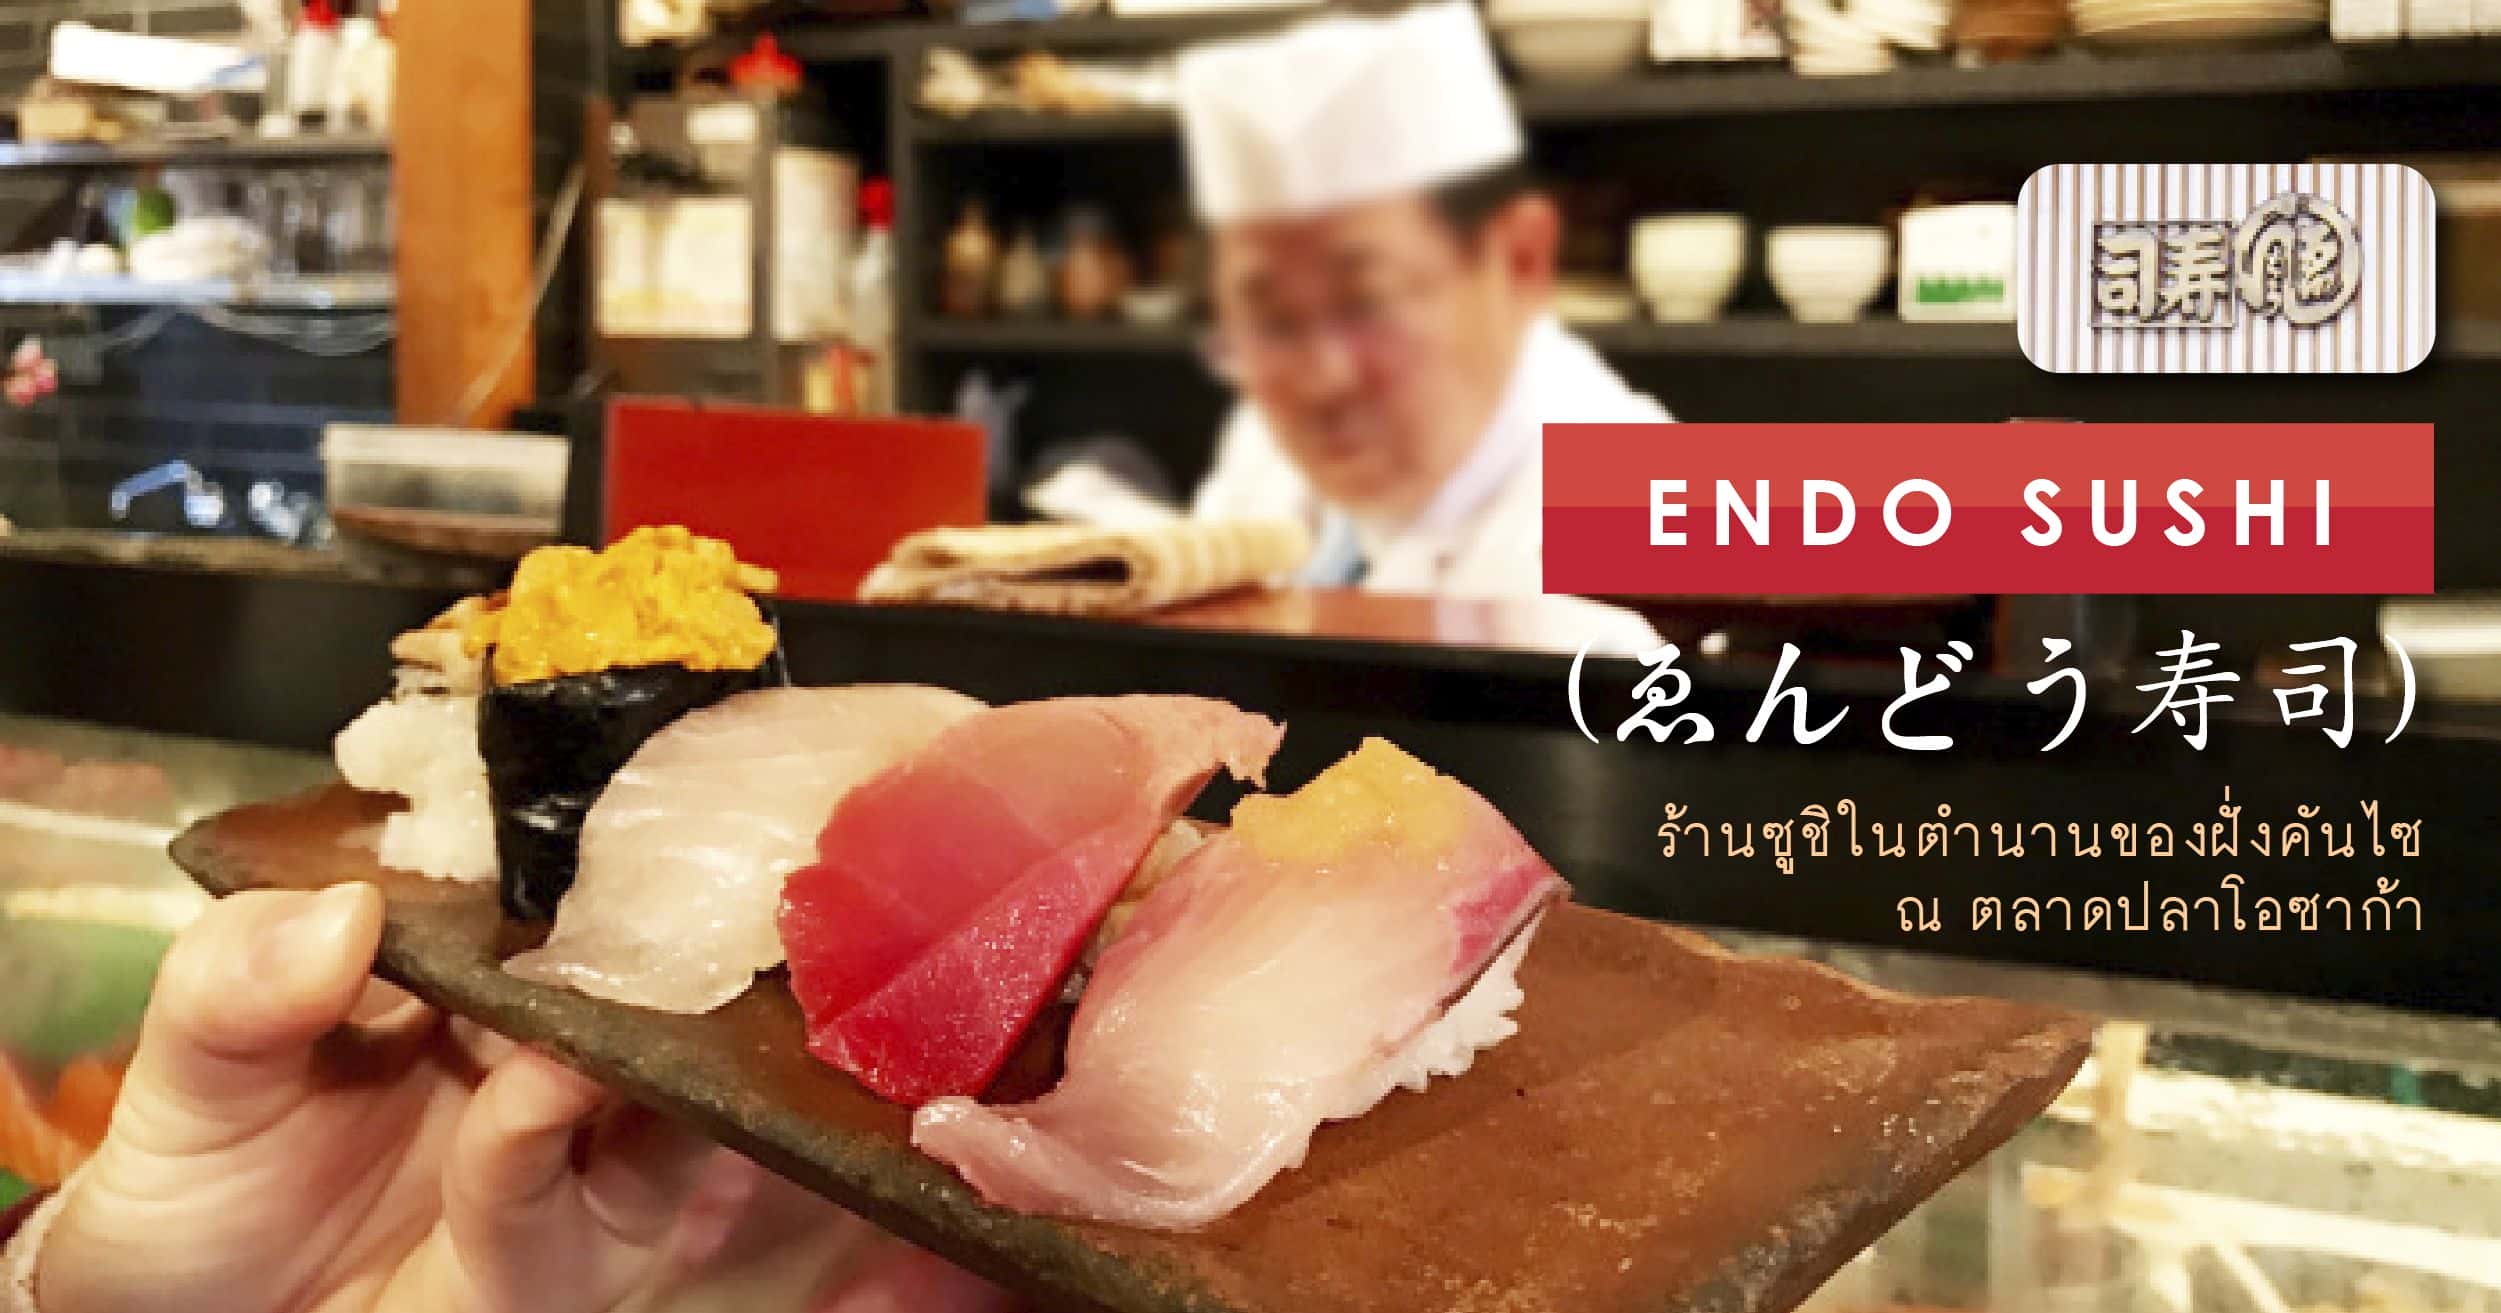 ร้านเอ็นโดซูชิ (Endo sushi) ถือเป็นร้านซูชิตำรับโอซาก้า ที่ตลาดปลาโอซาก้า